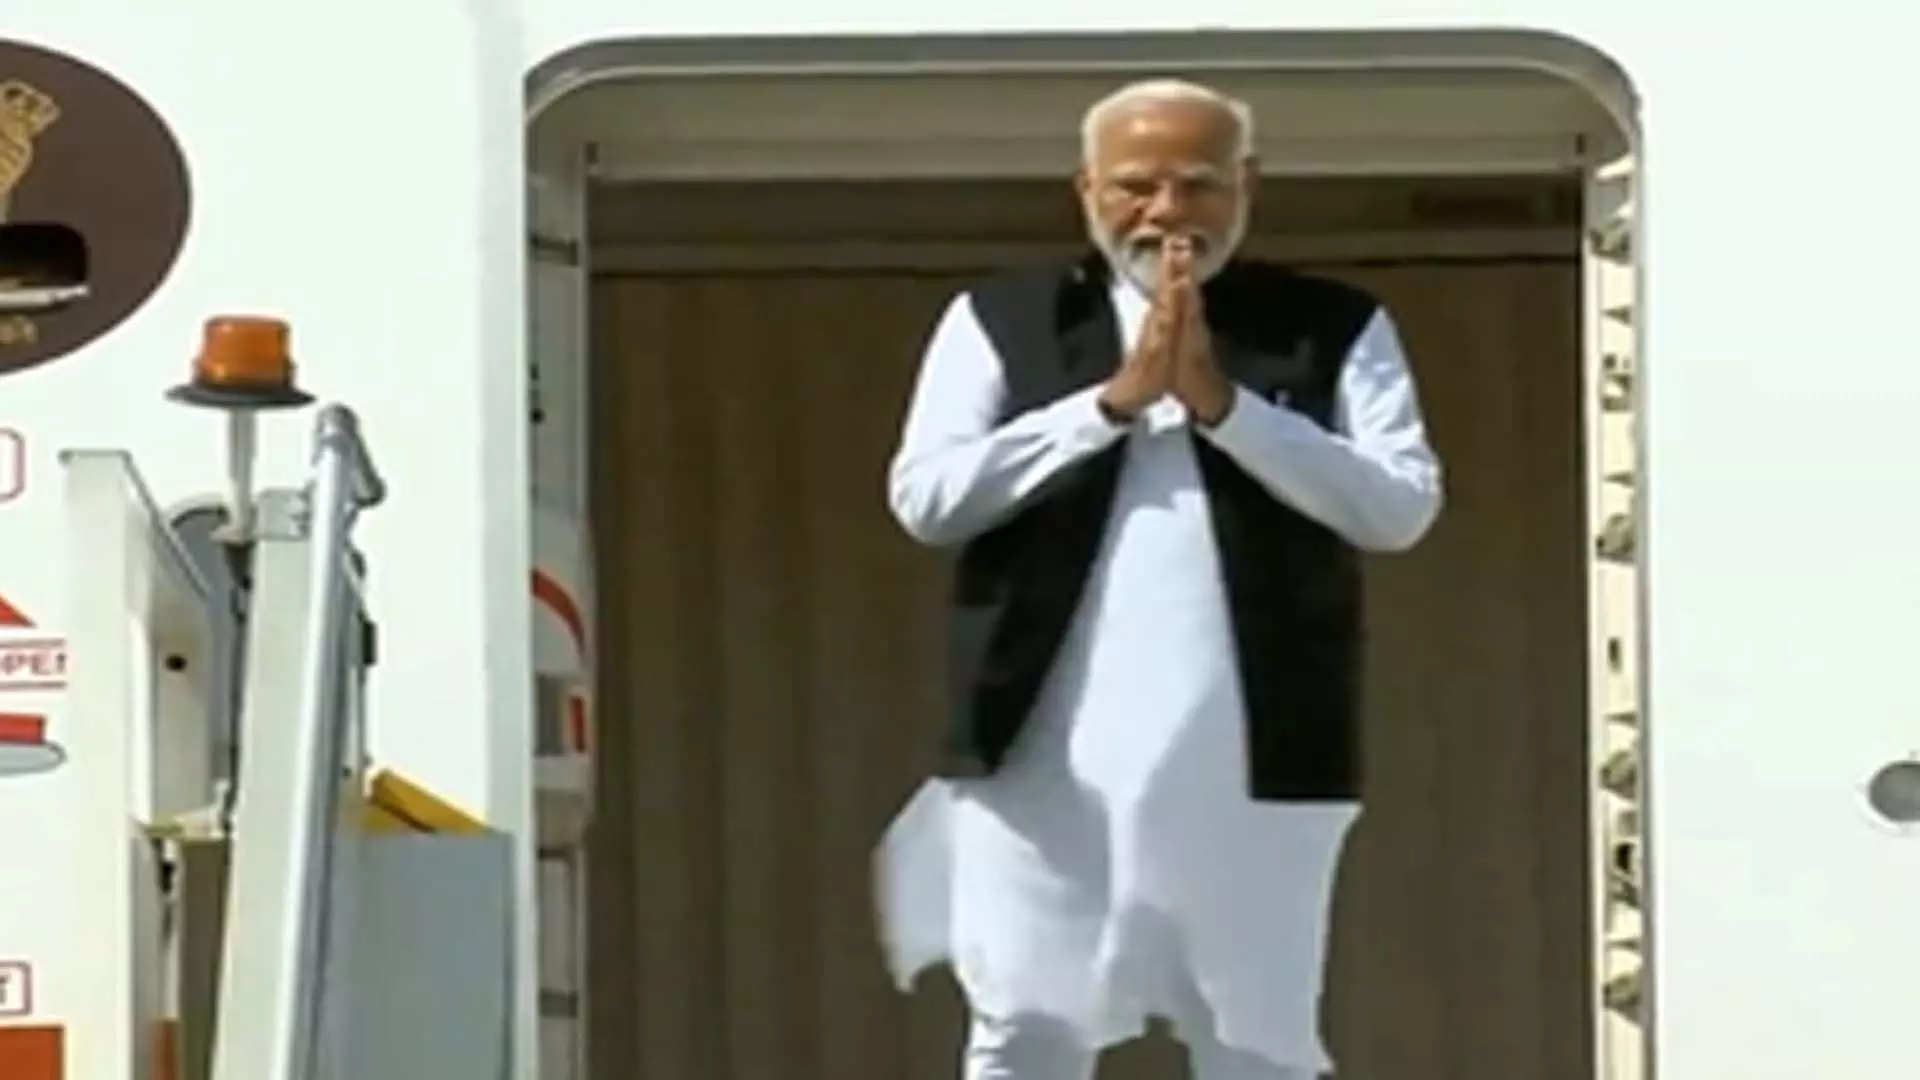 Delhi News: जी7 में भारत के विचार प्रस्तुत करने के बाद प्रधानमंत्री मोदी दिल्ली लौटे